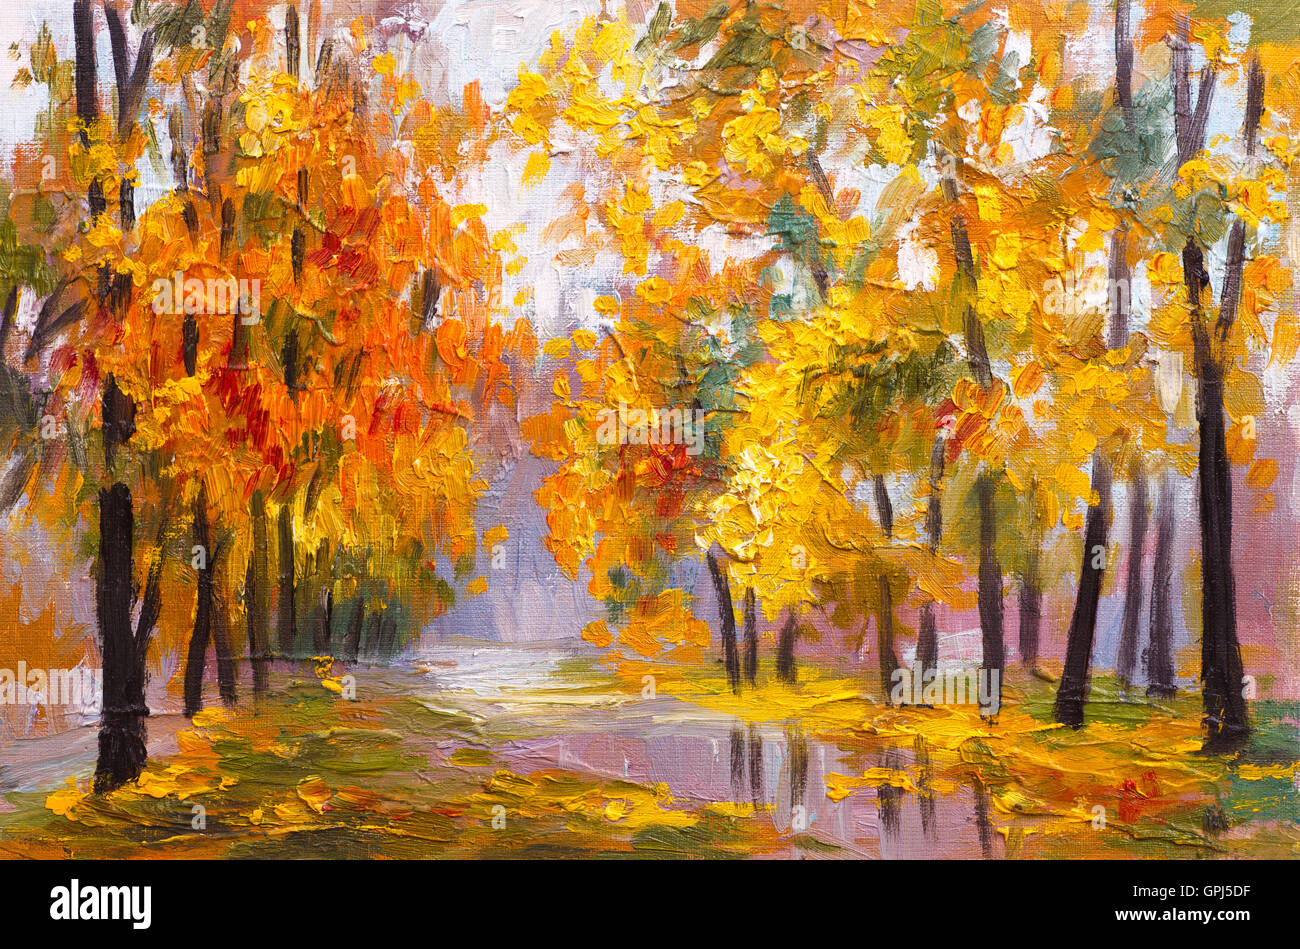 Peinture à l'huile paysage - forêt d'automne, plein de feuilles tombées, photo couleur , dessin abstrait Banque D'Images